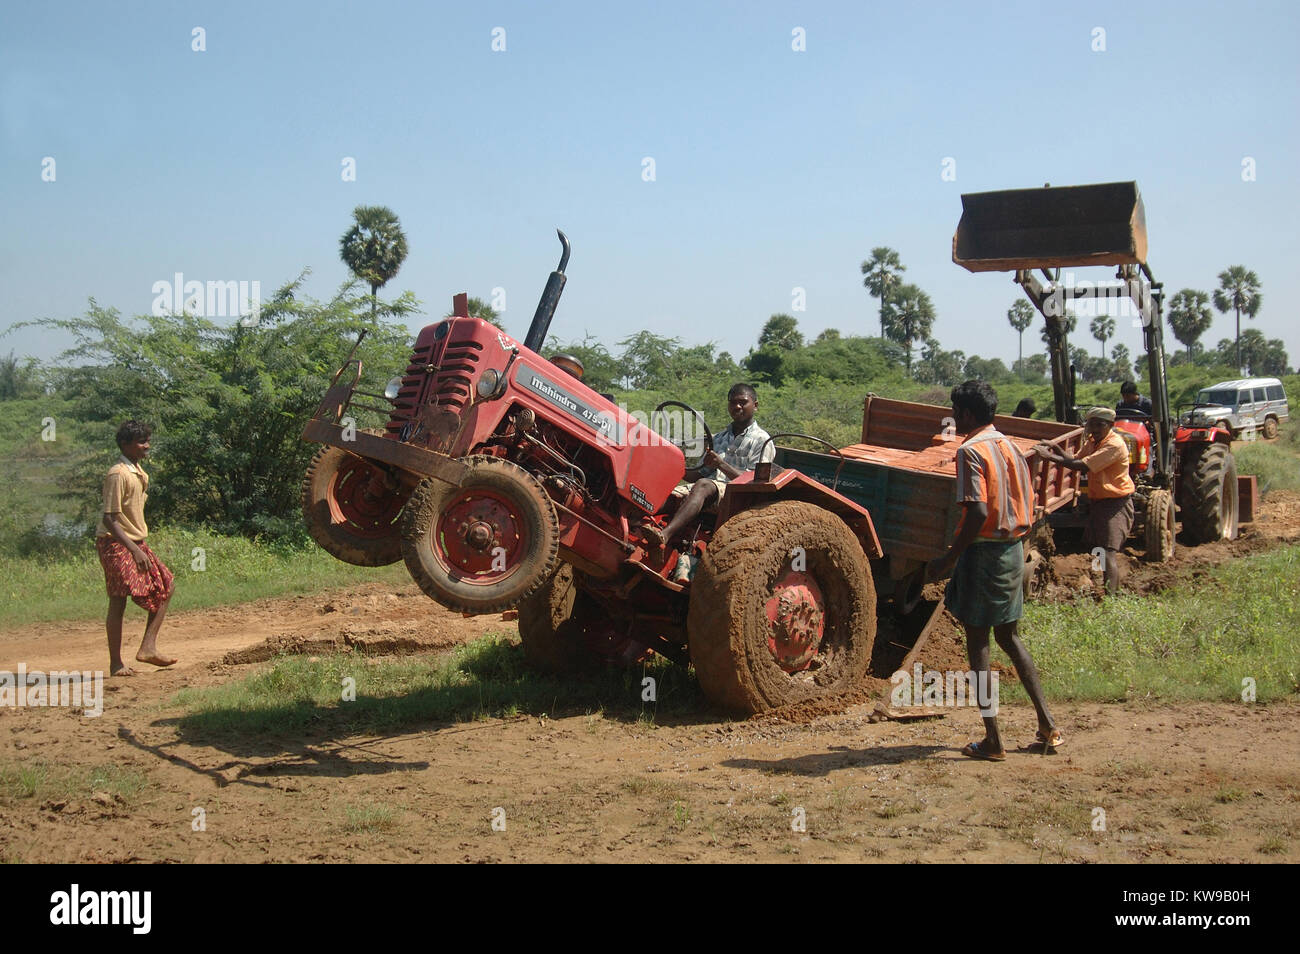 TAMIL Nadu, Inde, circa 2009 : hommes non identifiés pour travailler gratuitement un tracteur embourbé avec une charge de briques dans la remorque, vers 2009 au Tamil Nadu, Inde. Banque D'Images